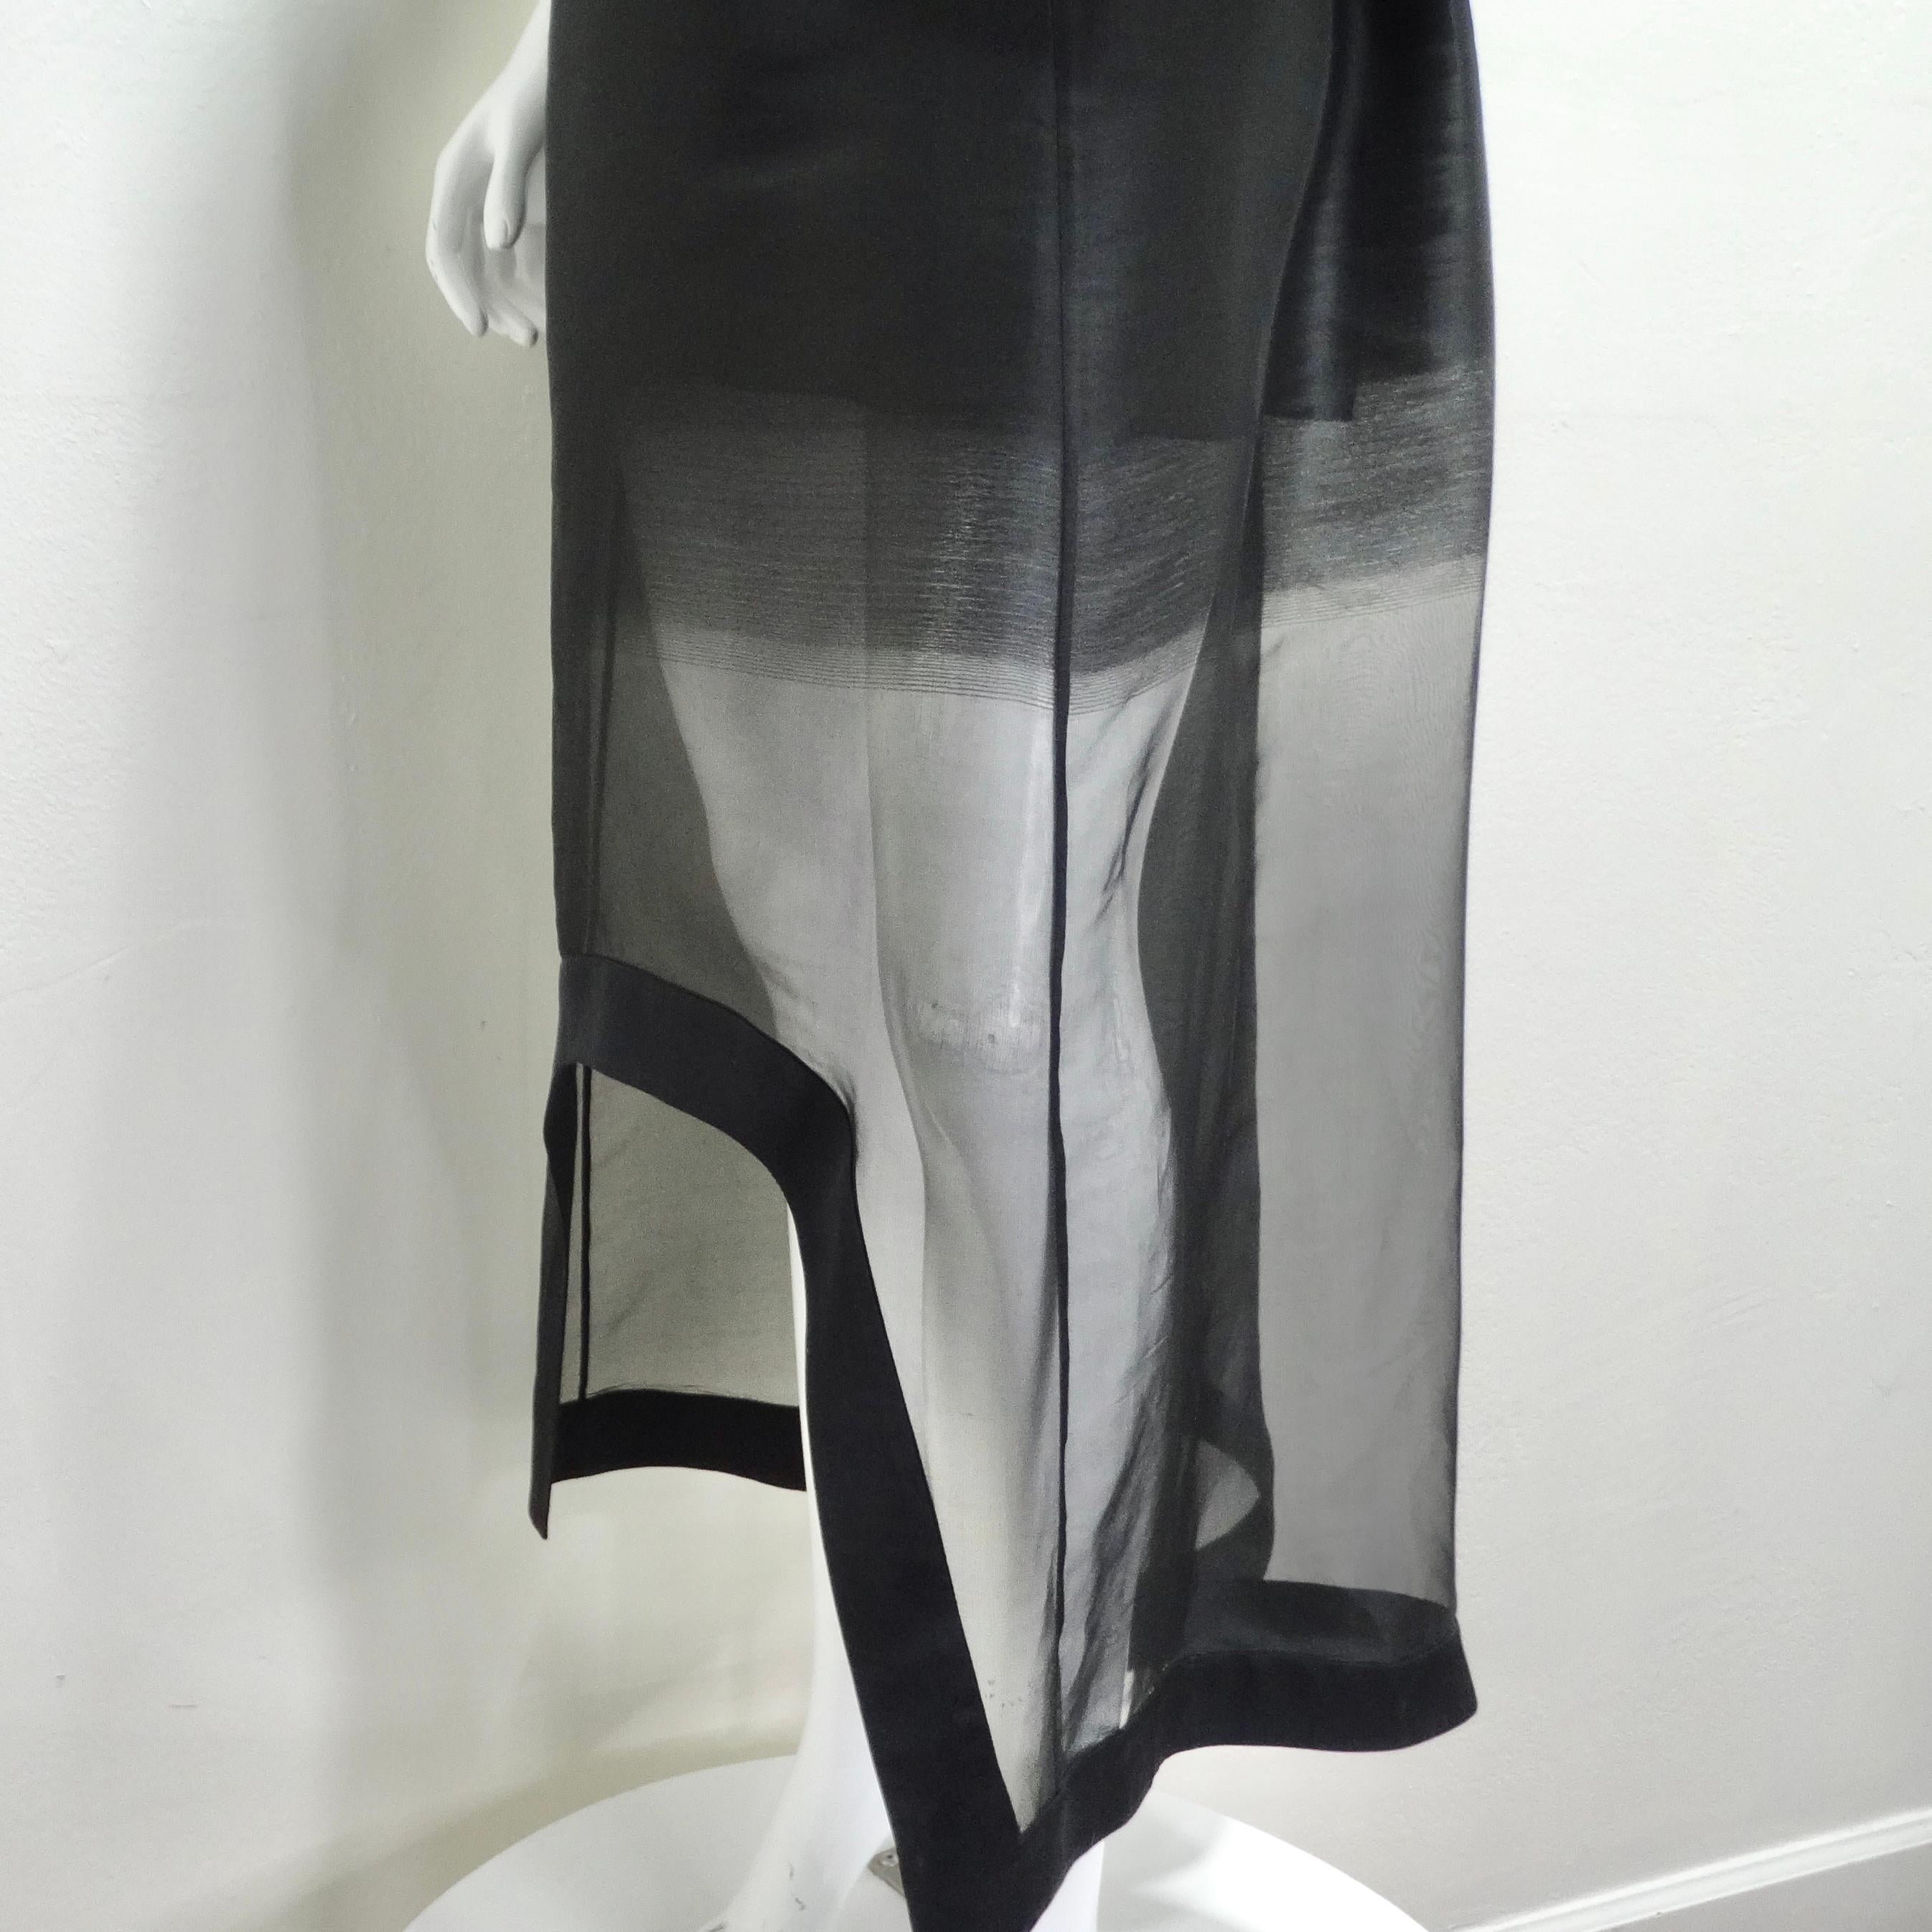 Alexander McQueen Fall 2020 Sheer Gradient Black Maxi Dress 7